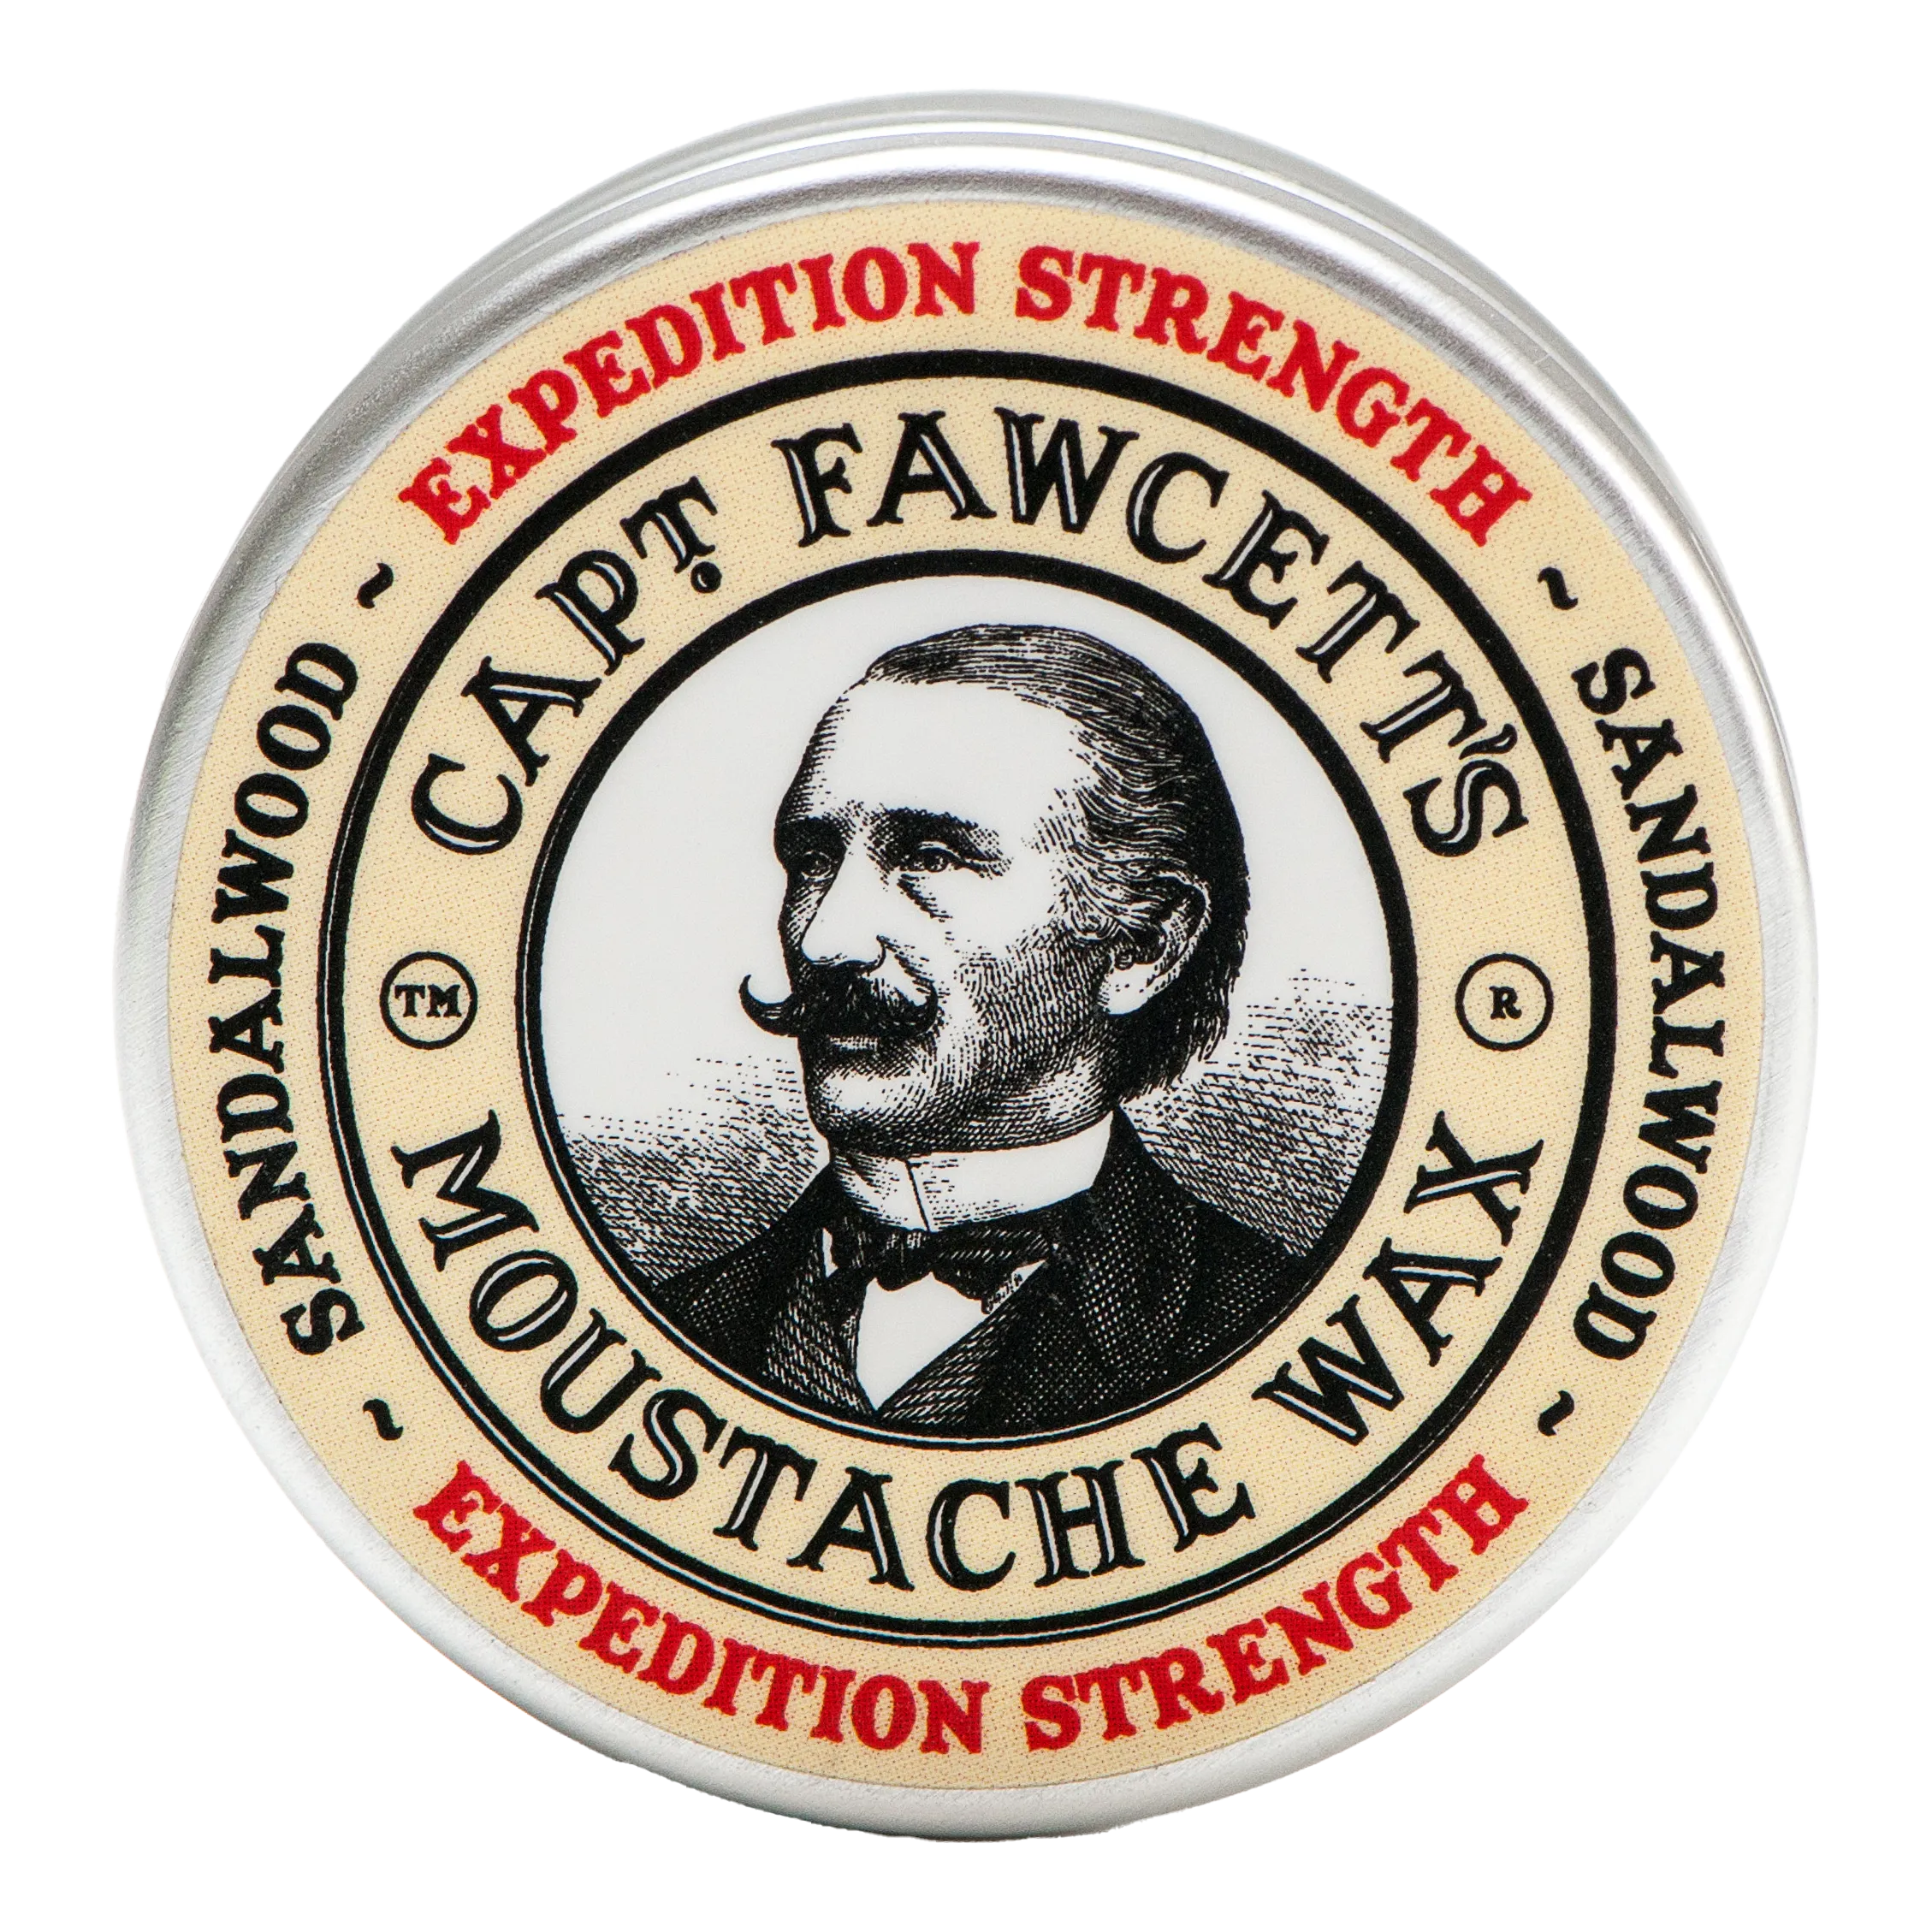 Captain Fawcett's Expedition Strength bartevoks / mustasjevoks 